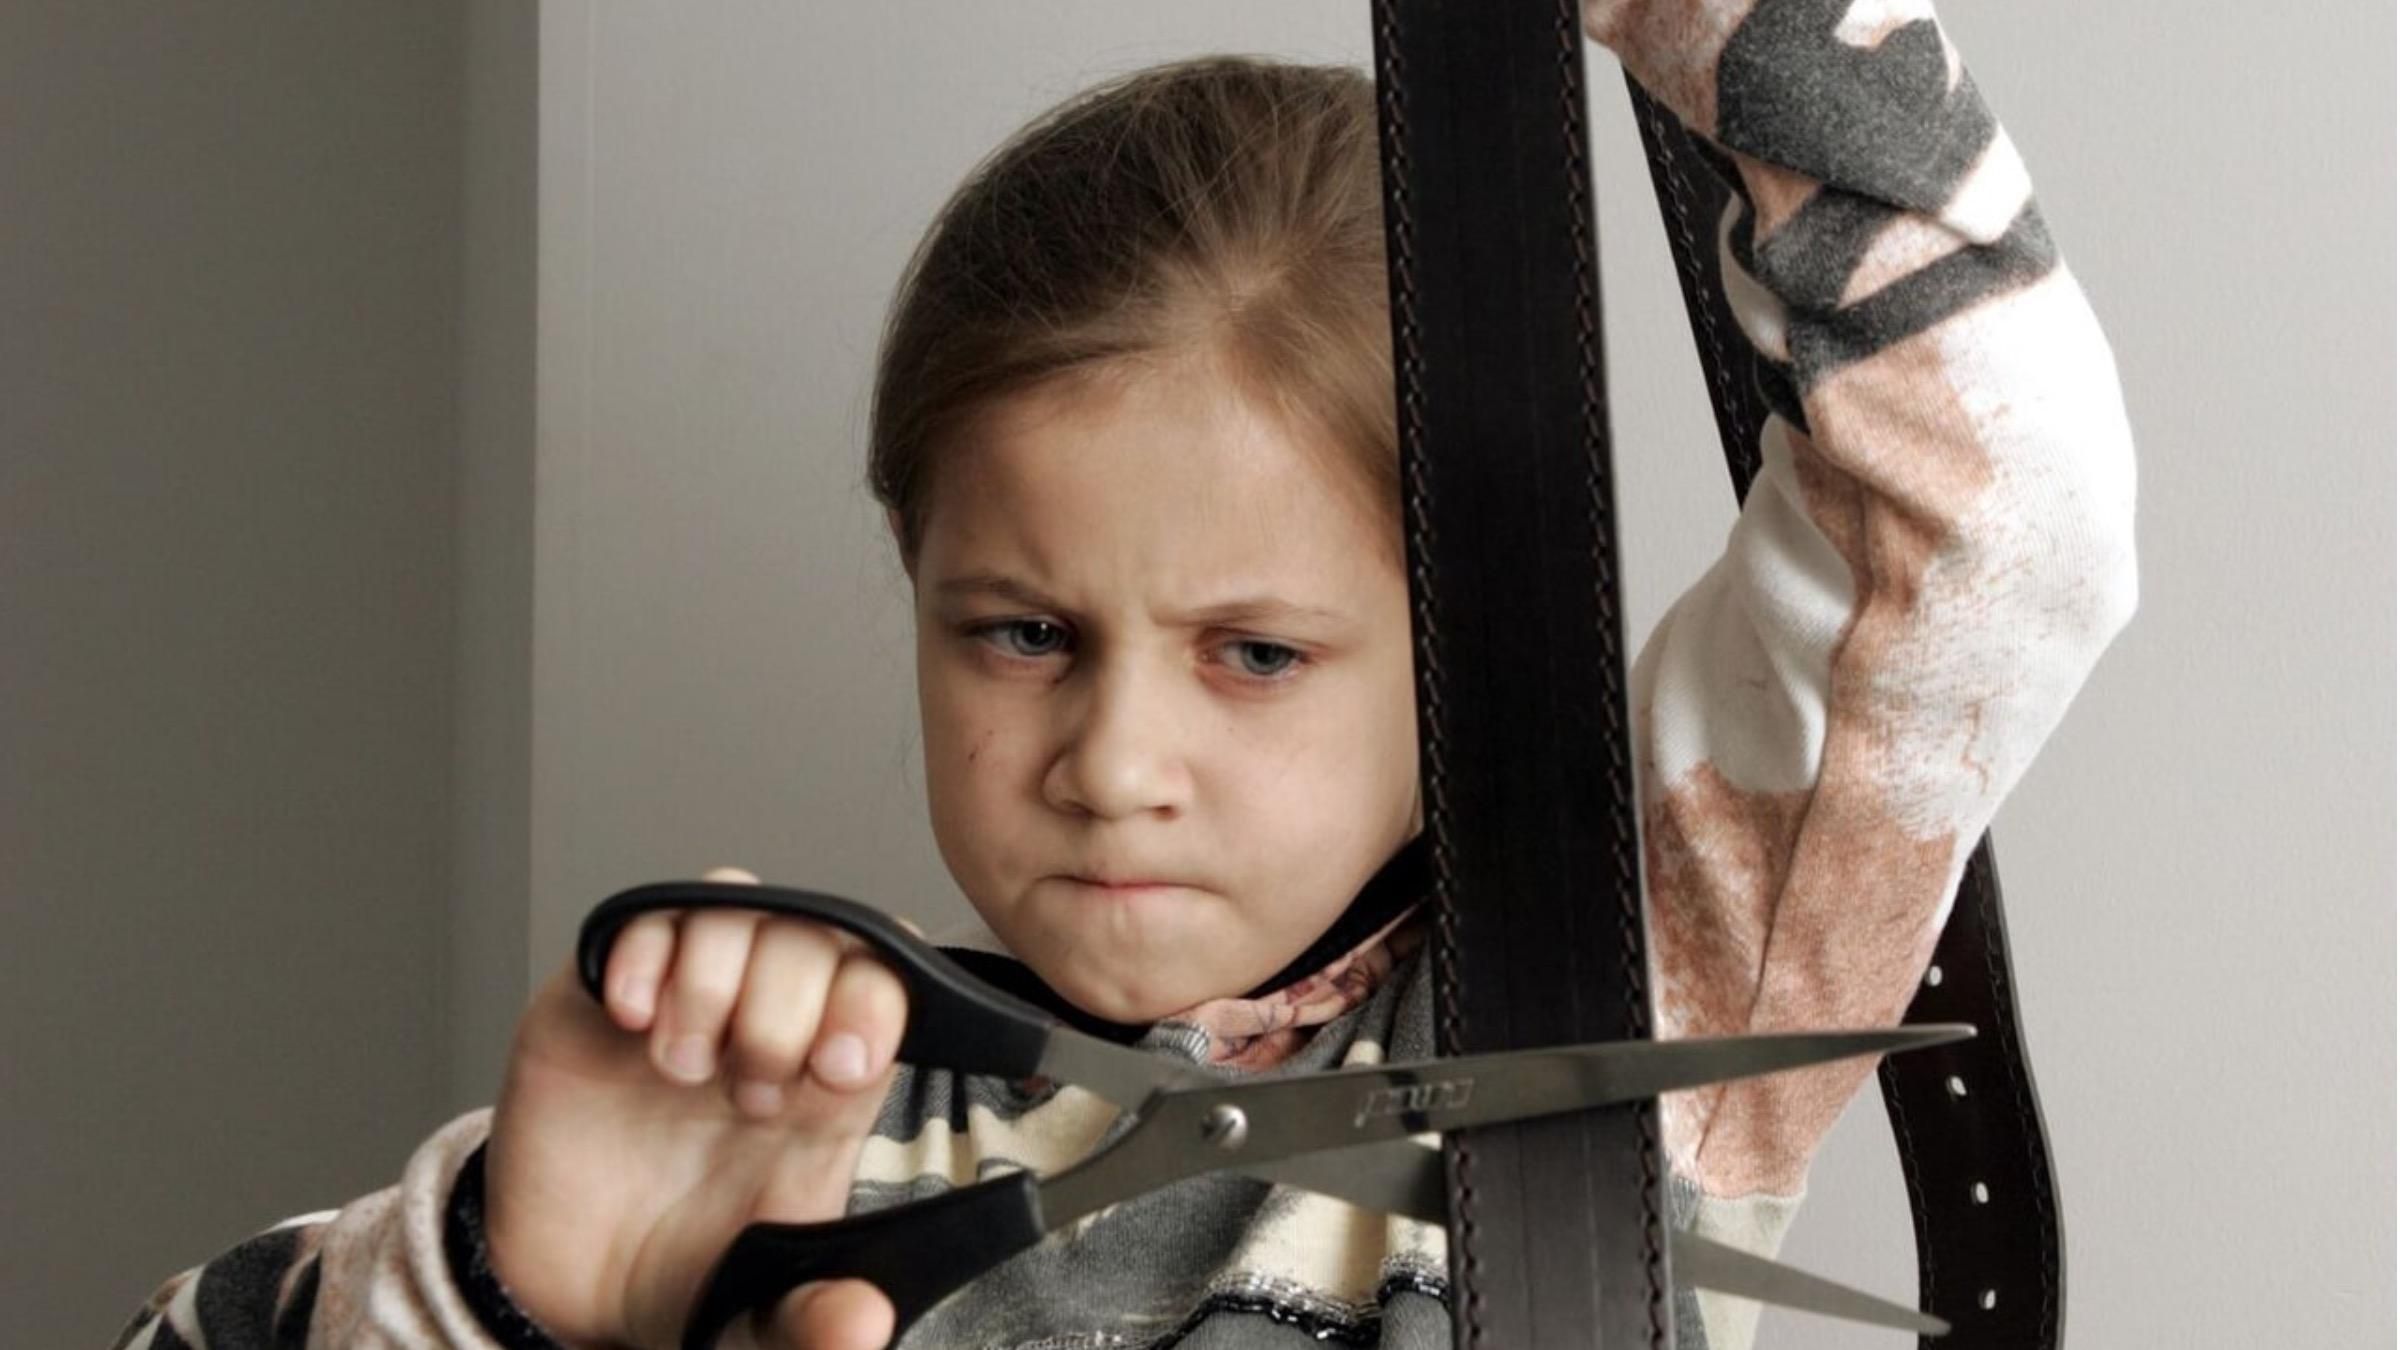 Детская жестокость: воспитание или генетика